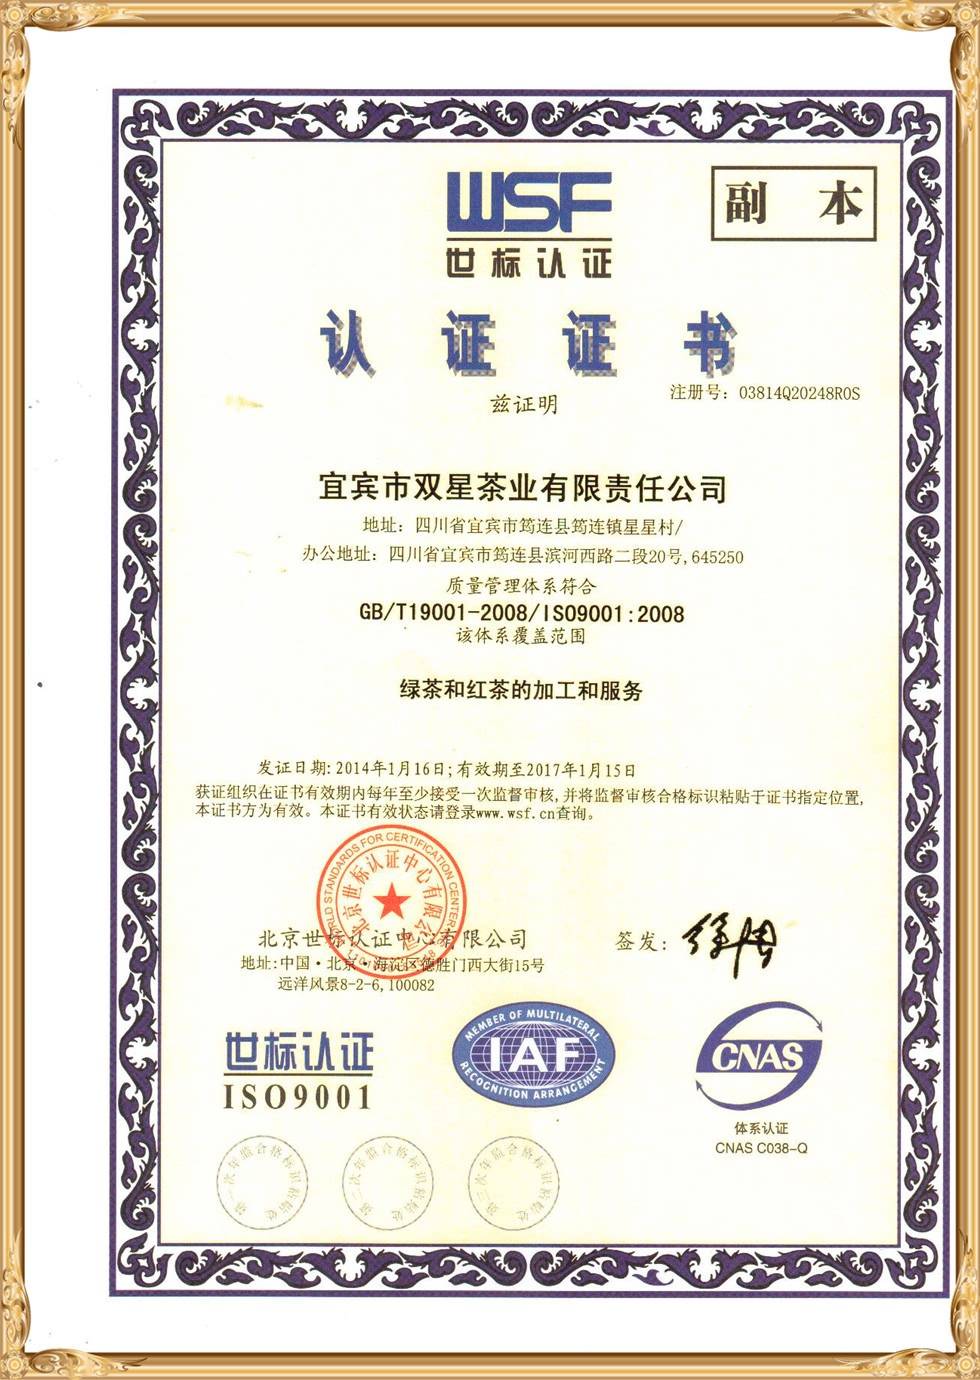 Tampilan sertifikat